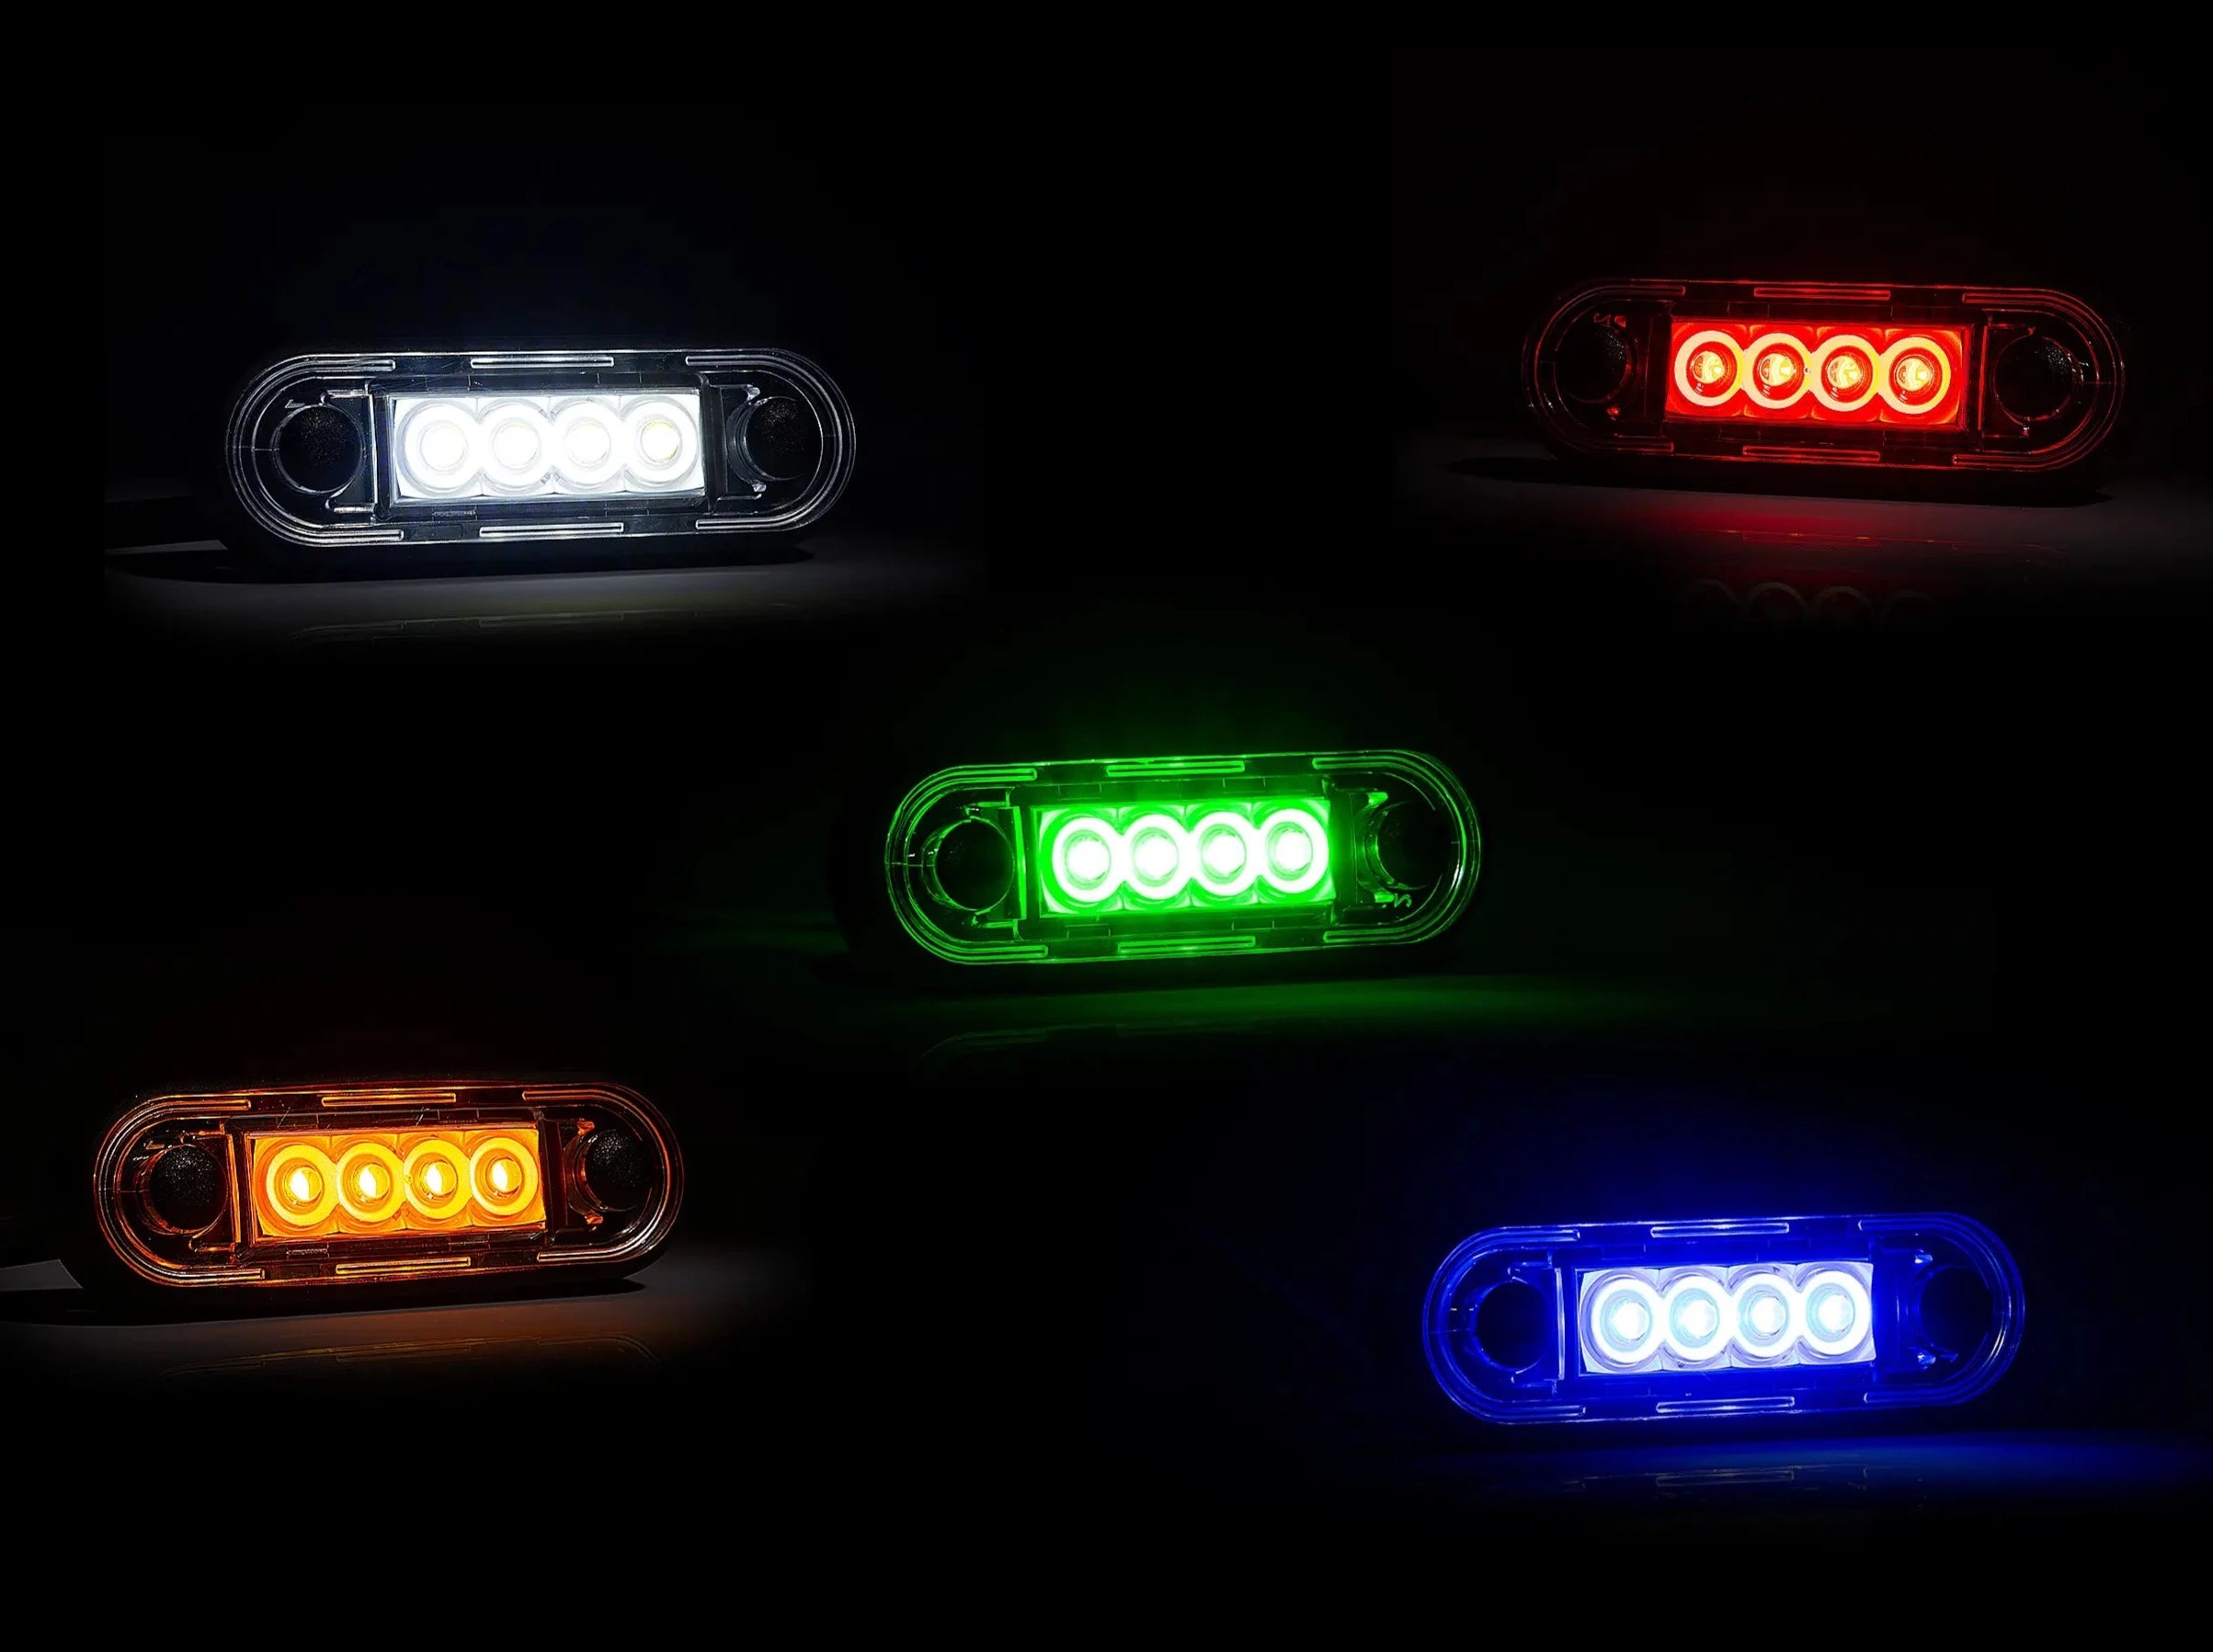 Llum de marcador LED premium per a barres de camions i barres de toro - spo-cs-disabled - spo-default - spo-disabled - spo-notify-me-disa